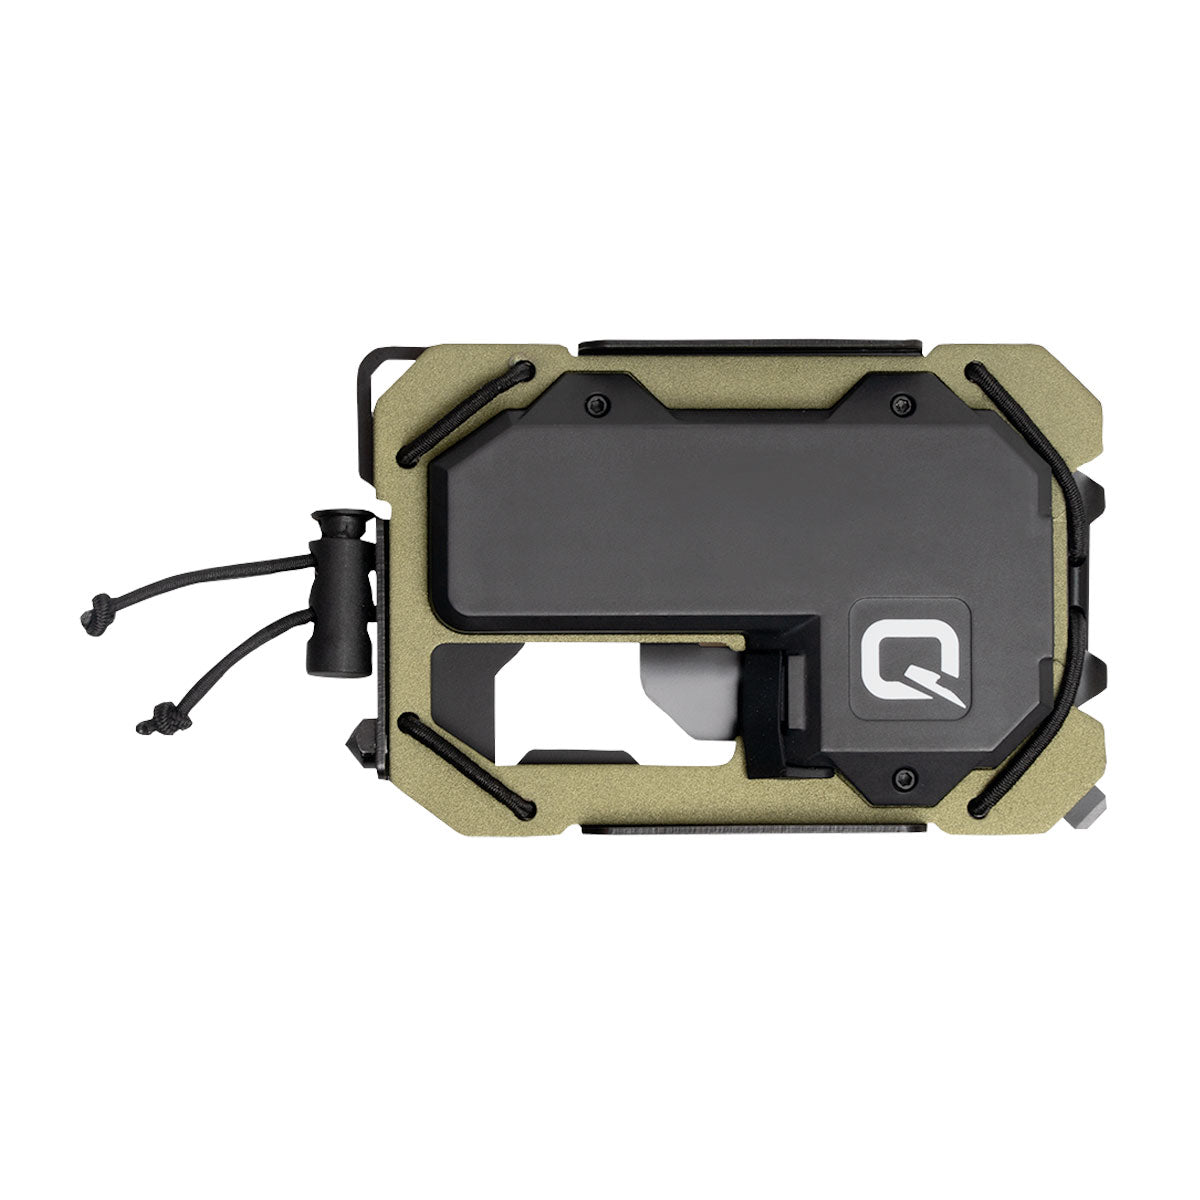 Quiqlite TAQ Wallet OD Green EDC Everyday Carry Quiqlite Tactical Gear Supplier Tactical Distributors Australia